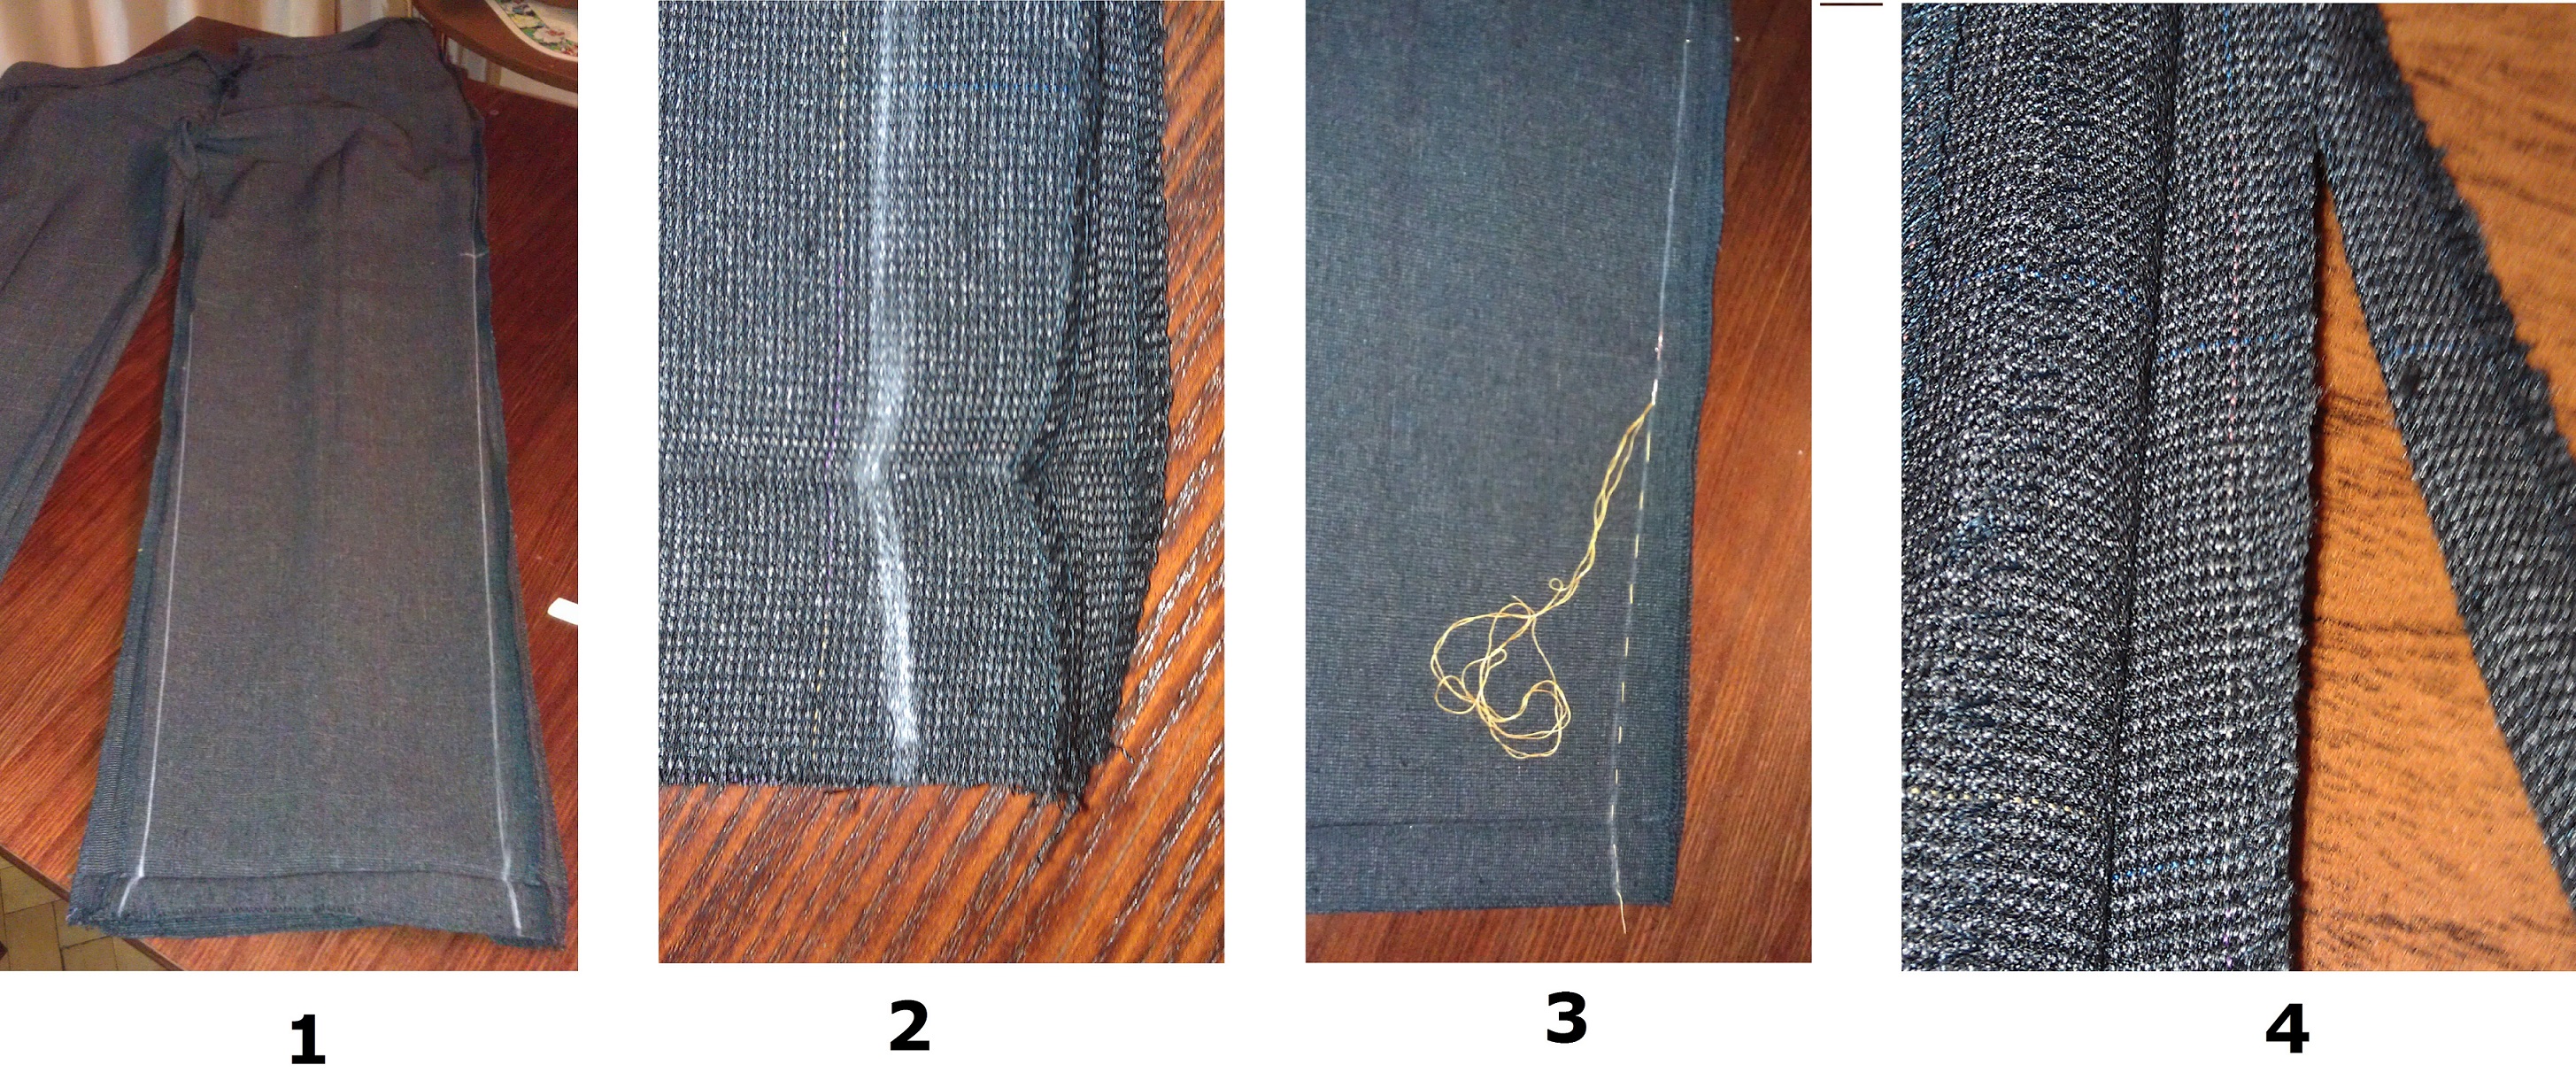 Как подшить джинсы вручную без машинки: каким швом правильно подшивать своими руками в талии, как сделать красиво и быстро, фото